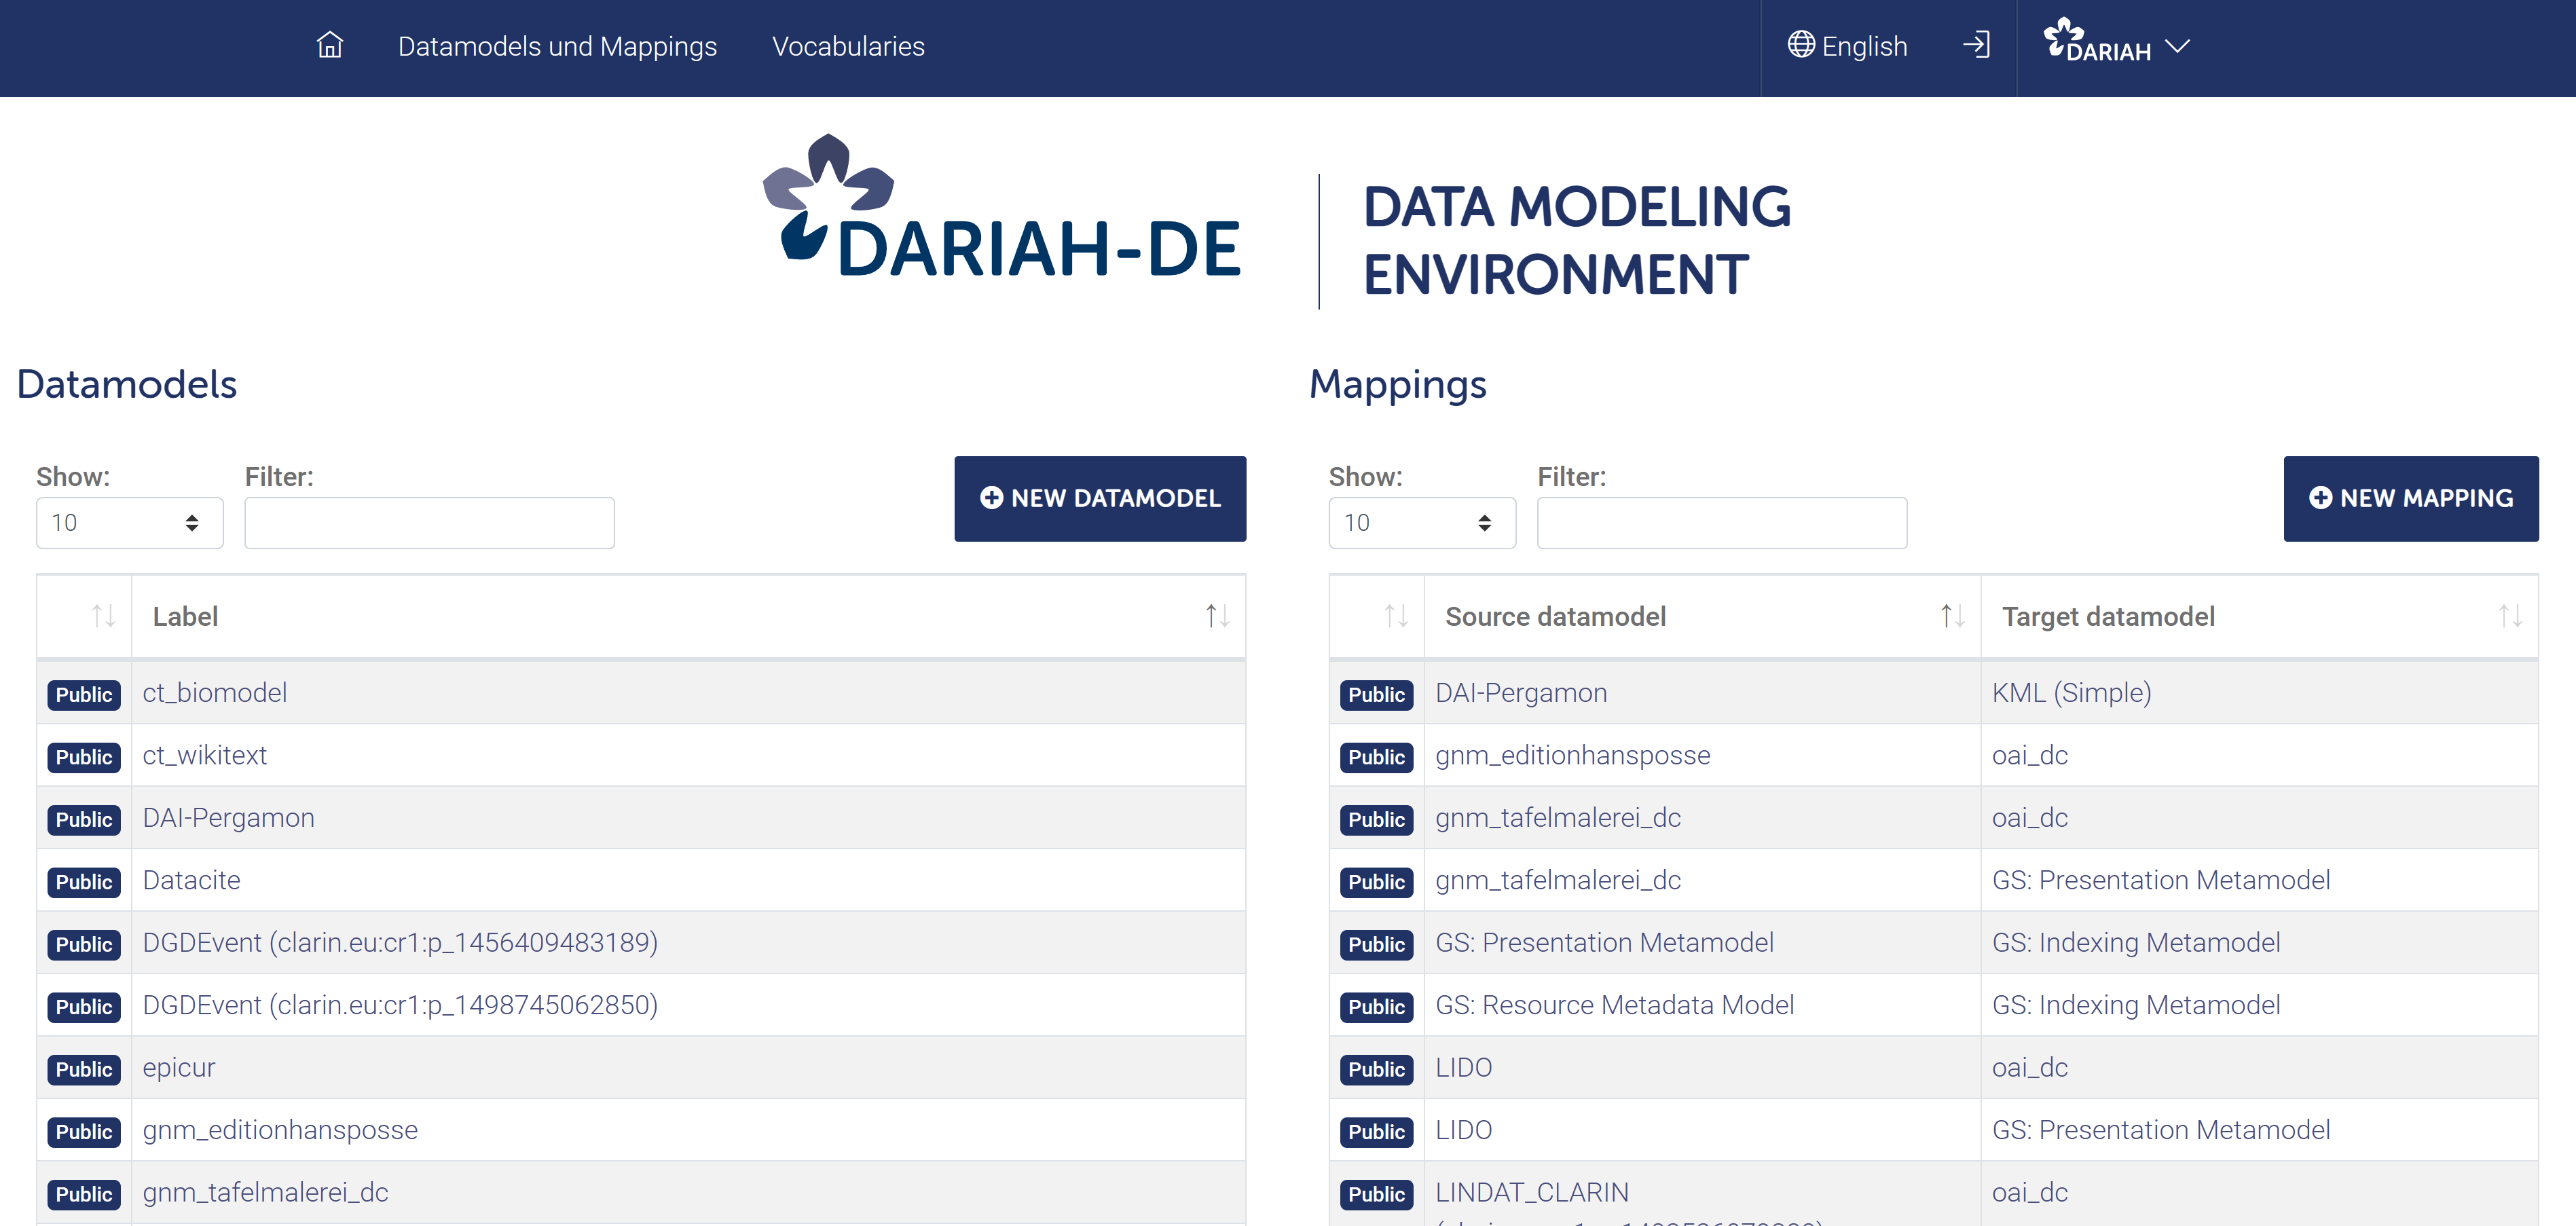 Data Modeling Environment